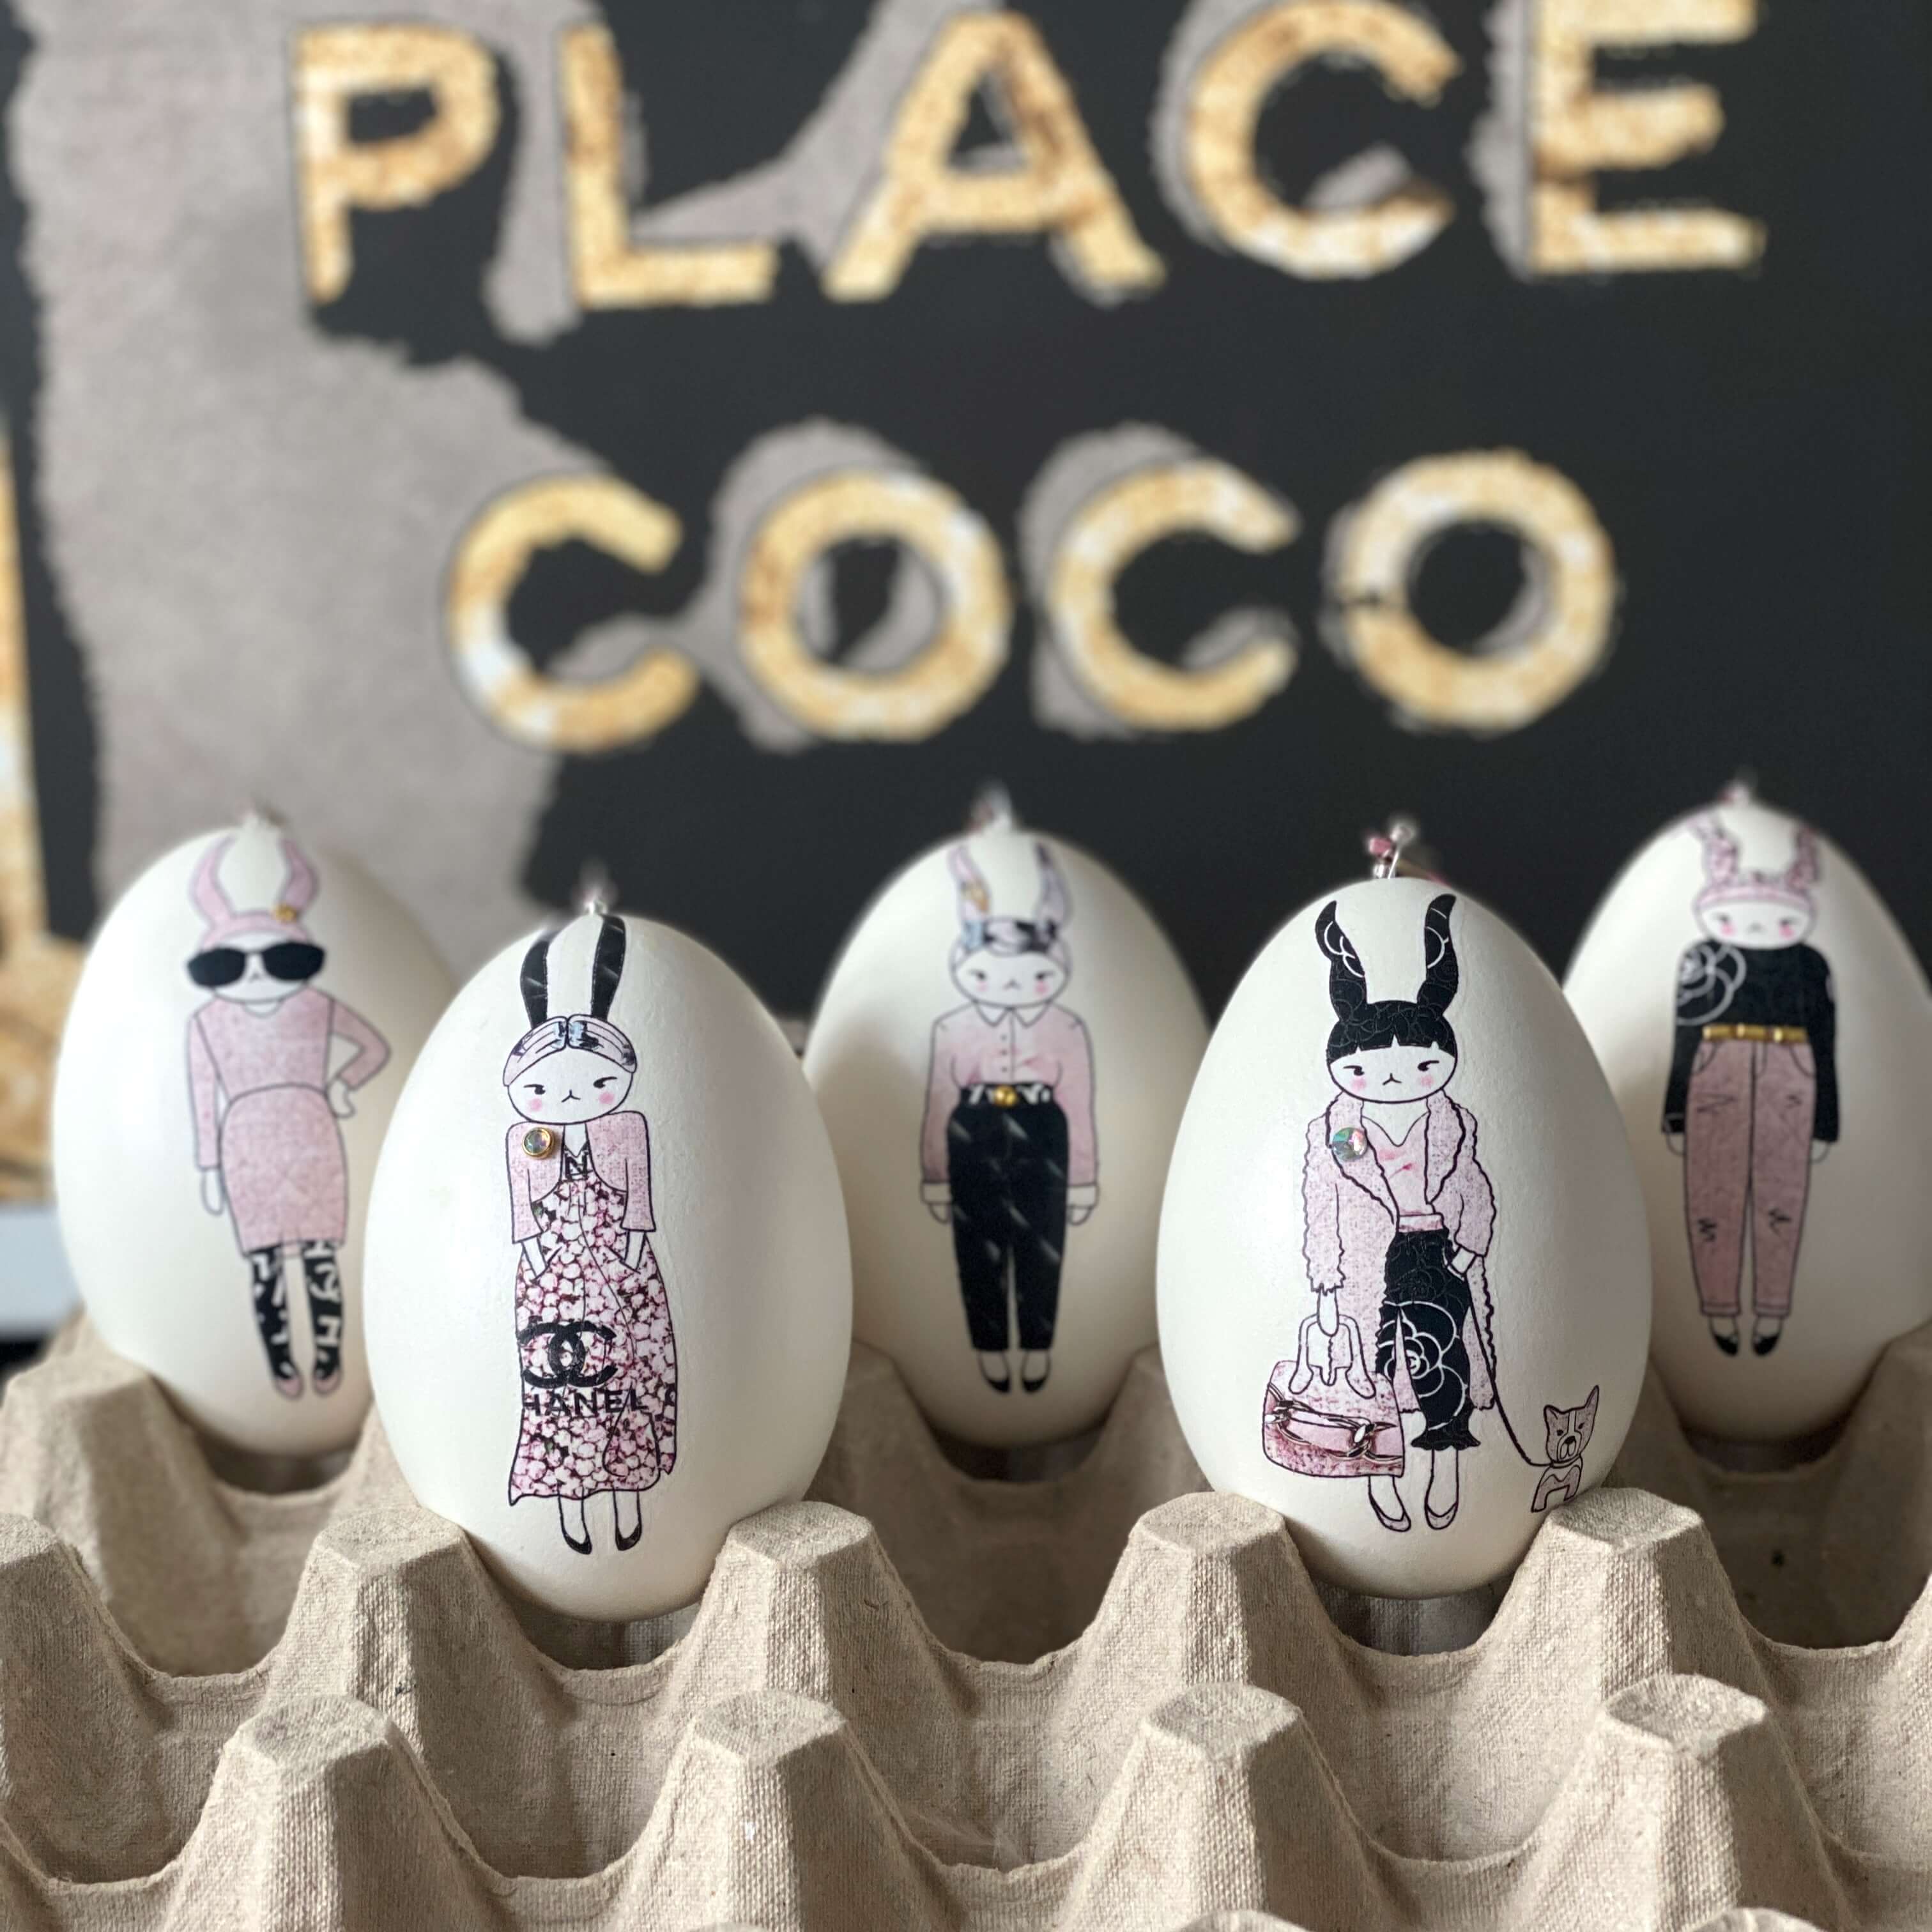 Ostereier-Deko: Echte Kunst trifft auf Eier – ei-nzigartig